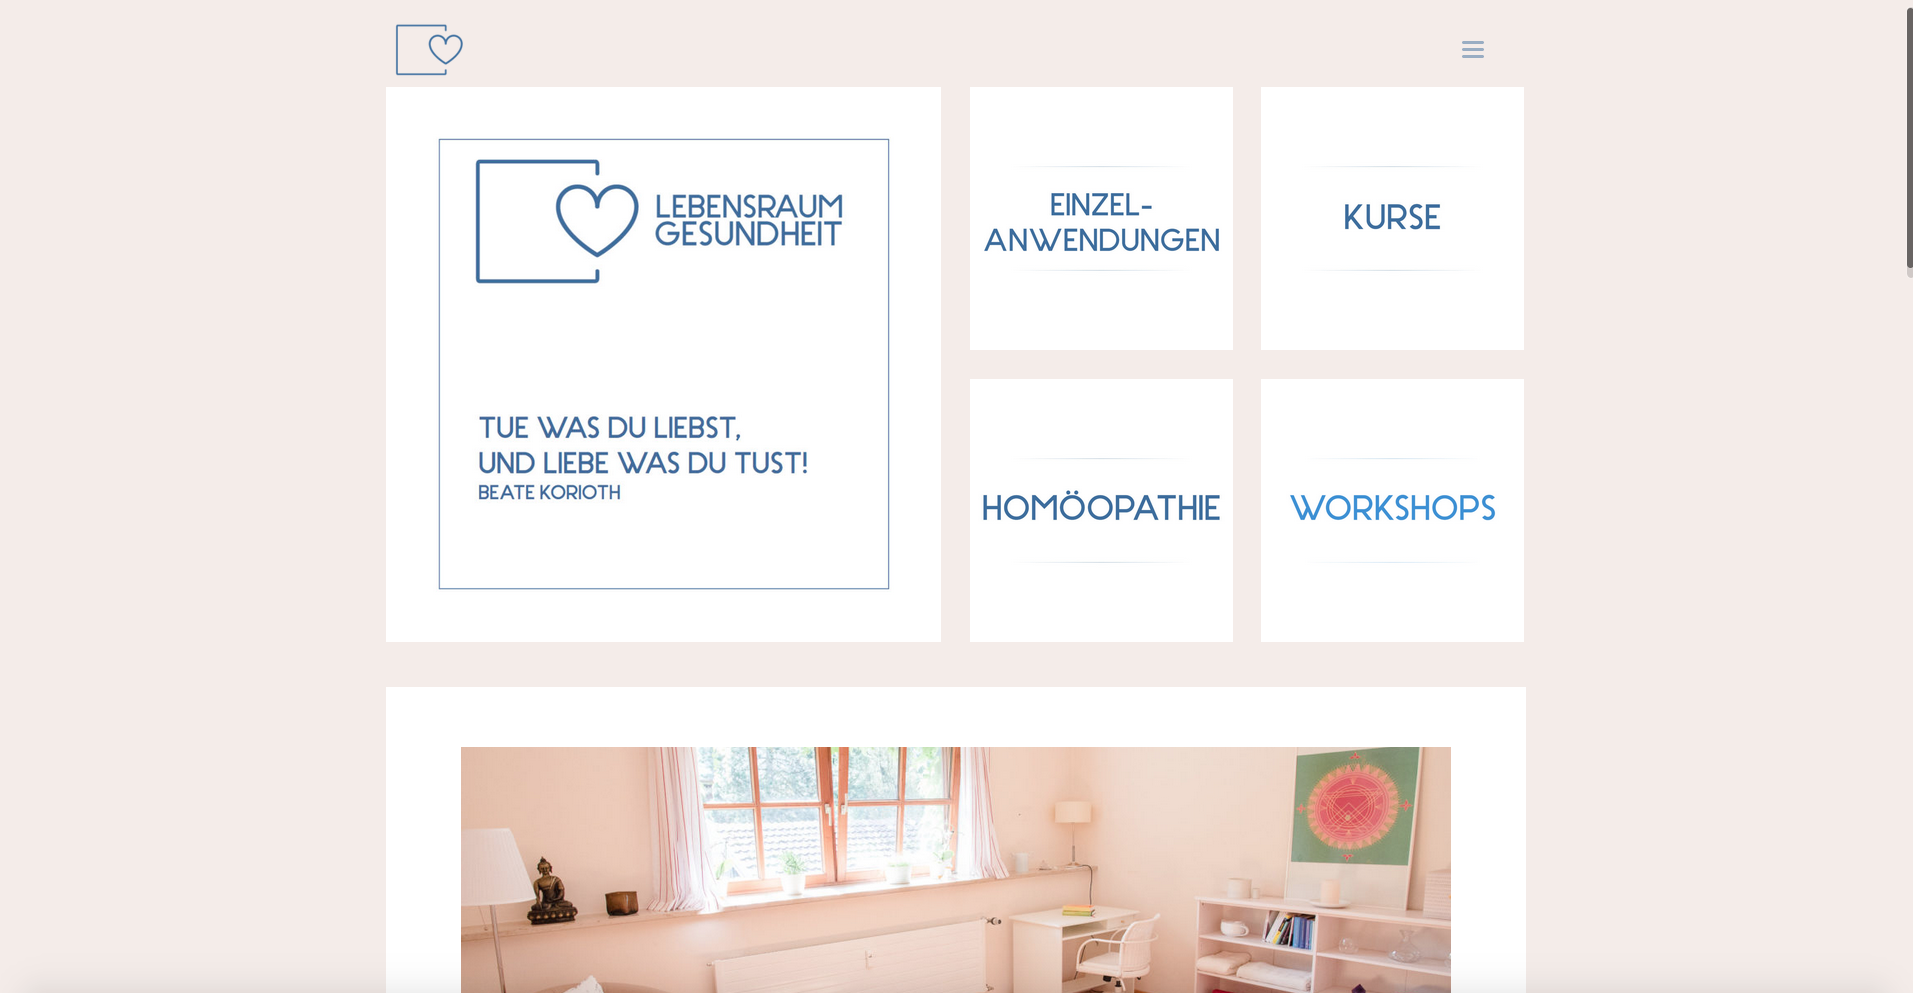 Fresh Herbs Communications Marketing Projektmanagement Website Salzburg_63_Lebensraums Gesundheit